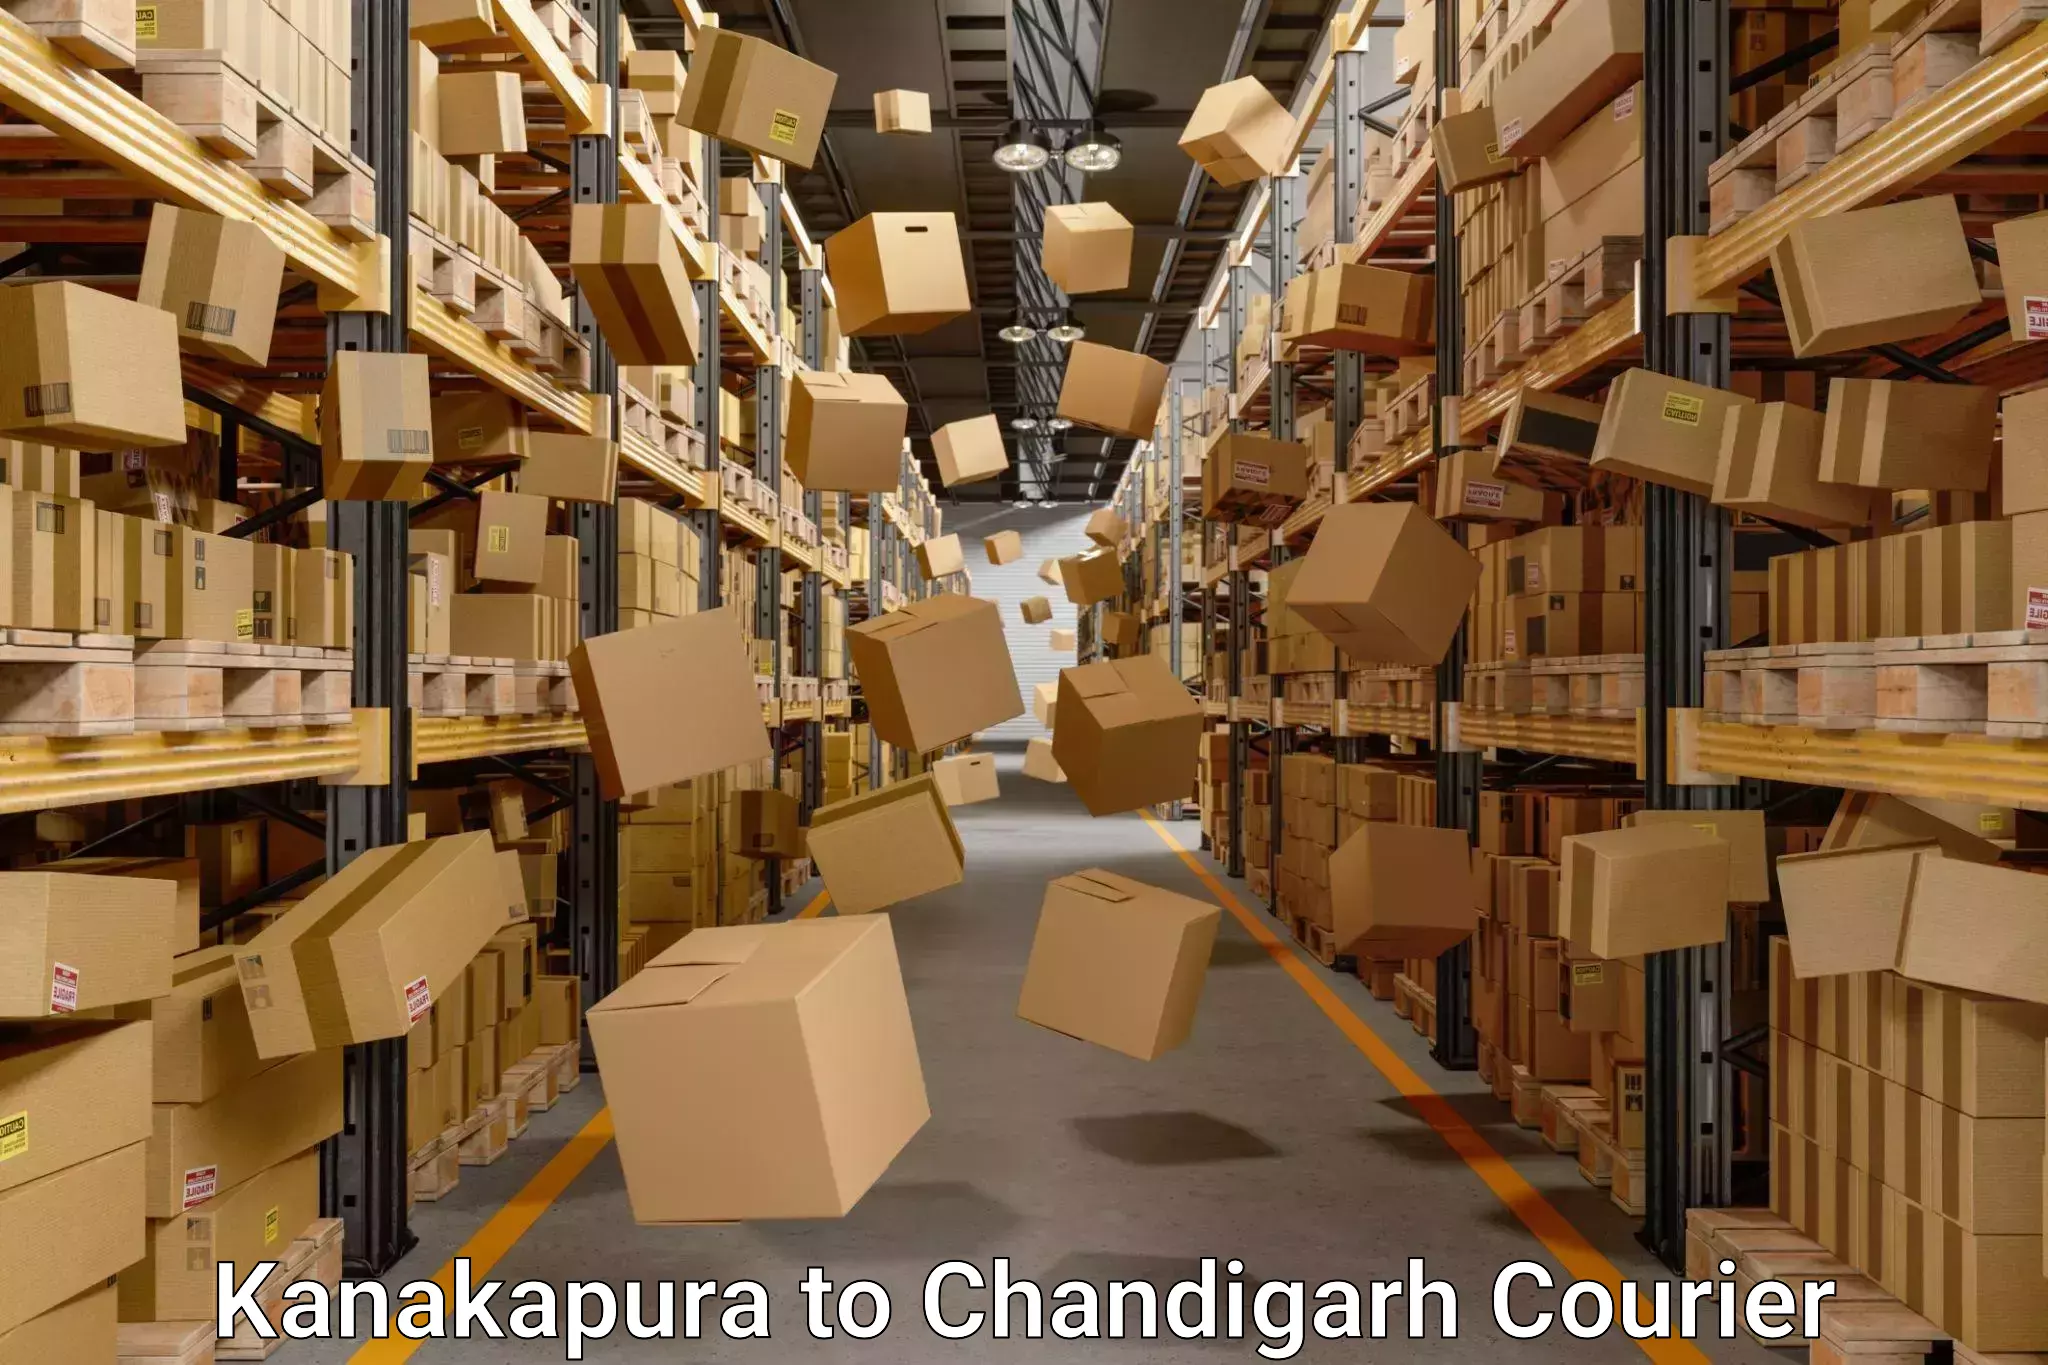 Furniture moving assistance Kanakapura to Chandigarh